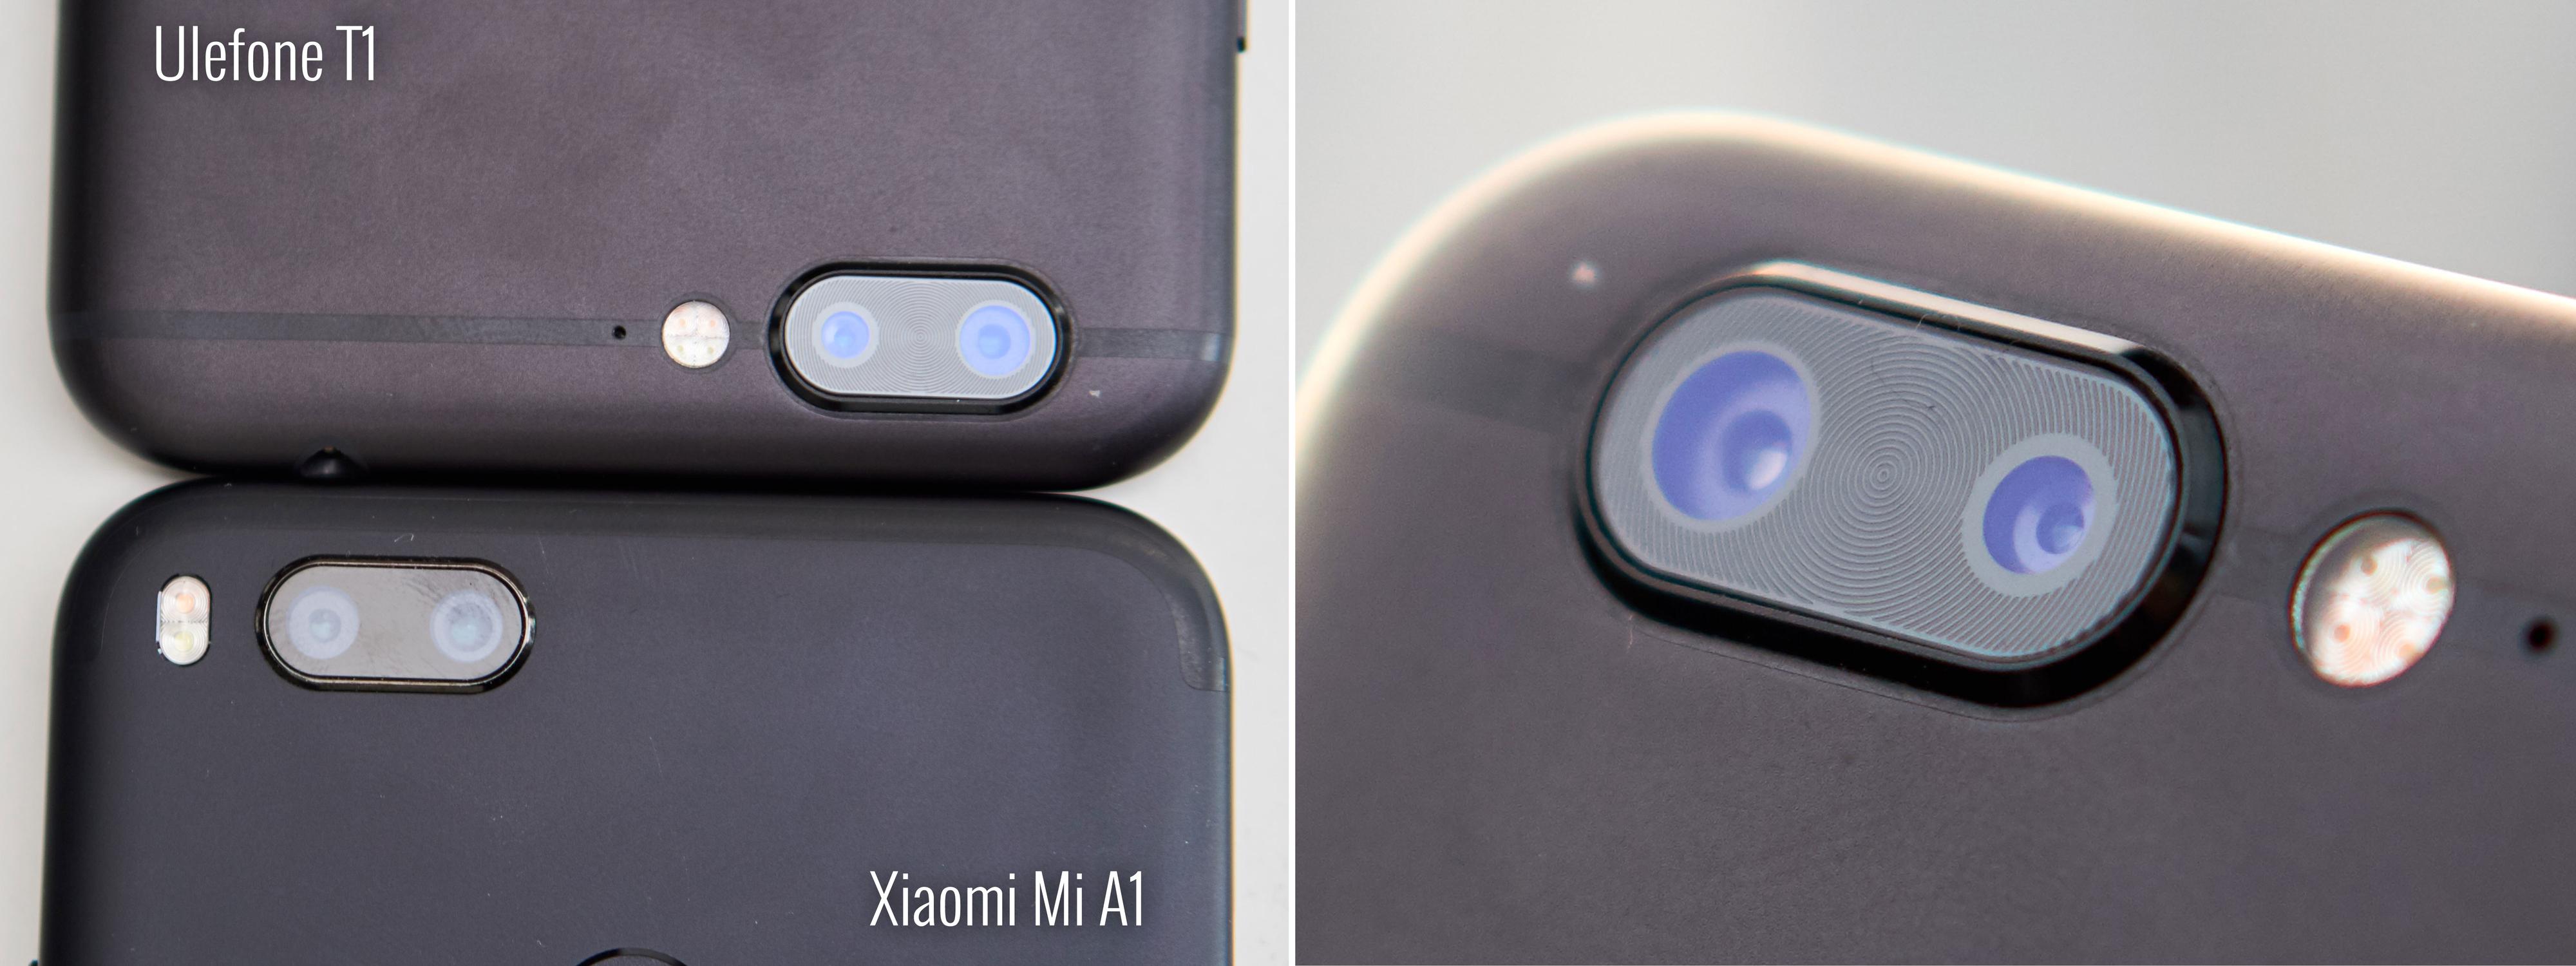 Ser ut som begge har zoom-kamera? Jepp. Men kun Xiaomi Mi A1 har det.